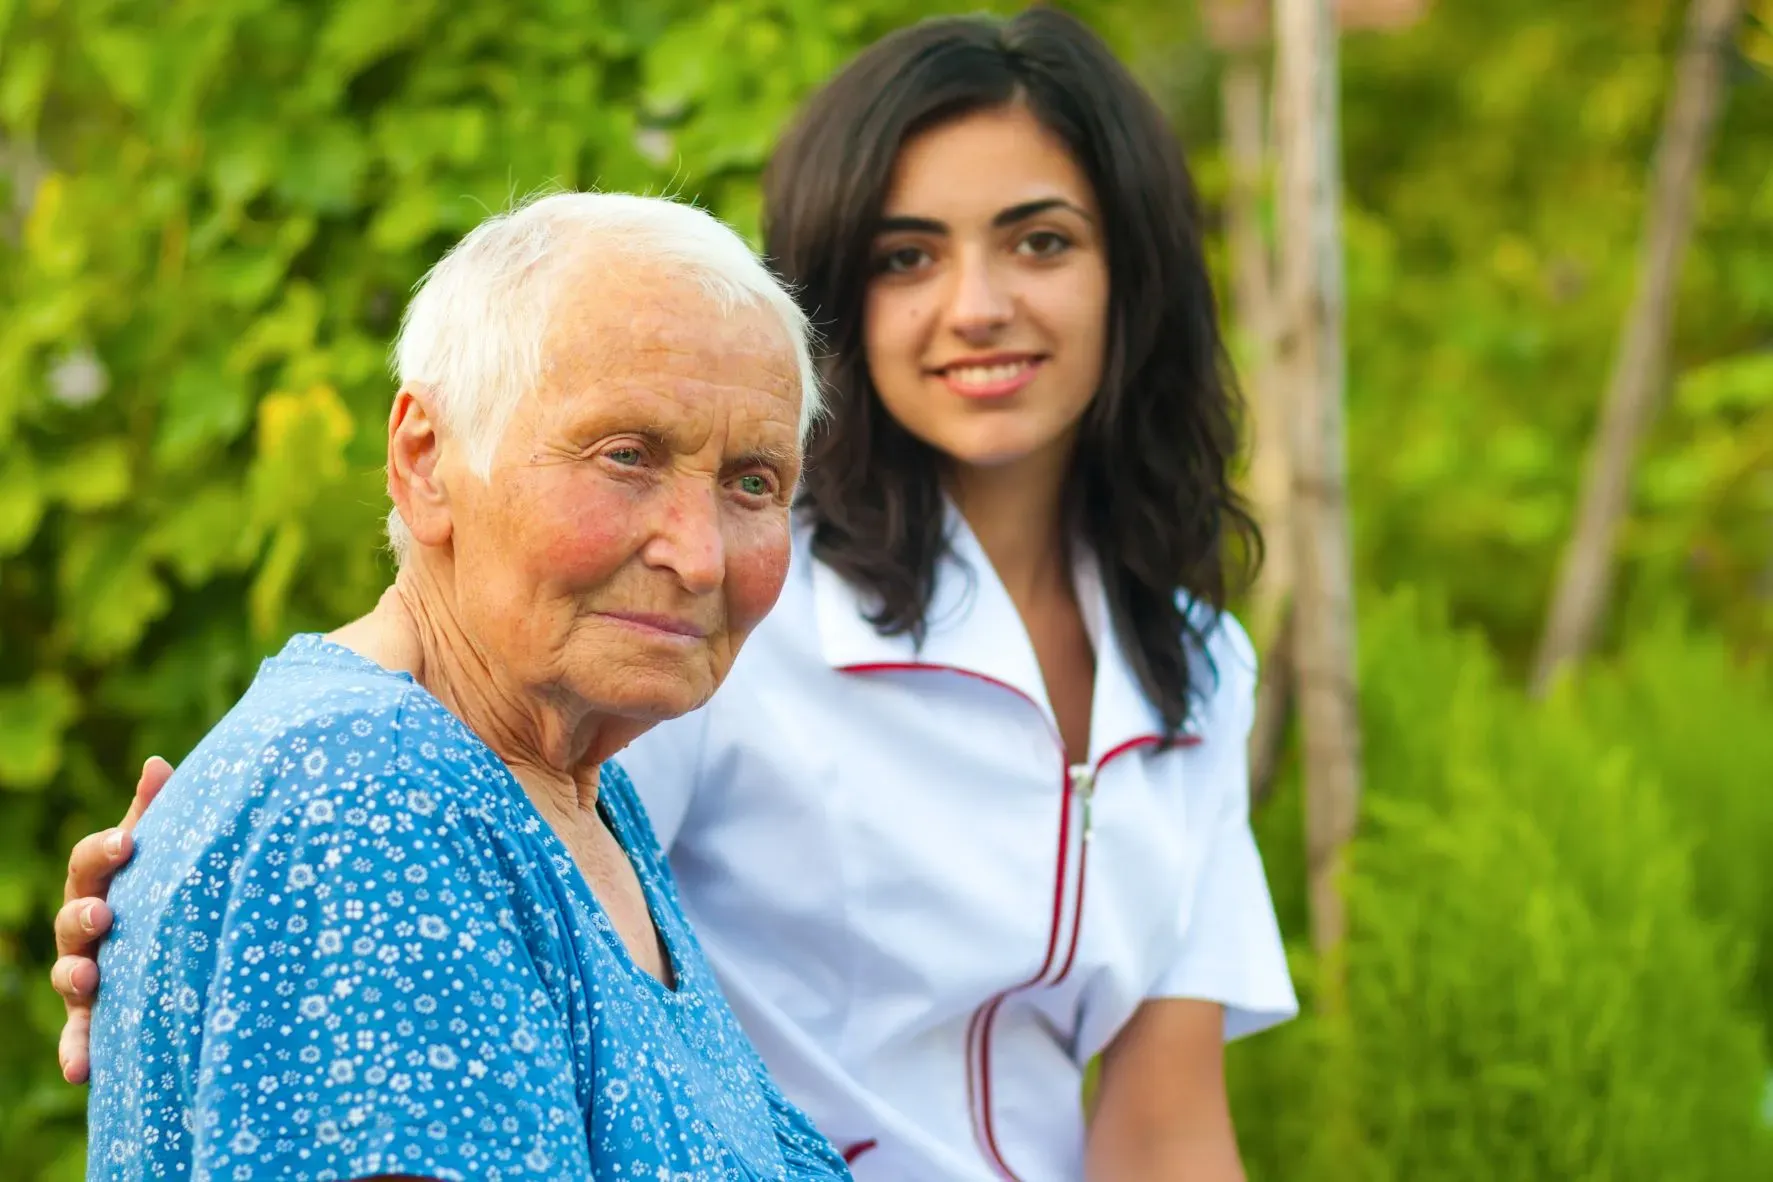 Rusza projekt edukacyjny skierowany do seniorów i opiekunów osób starszych